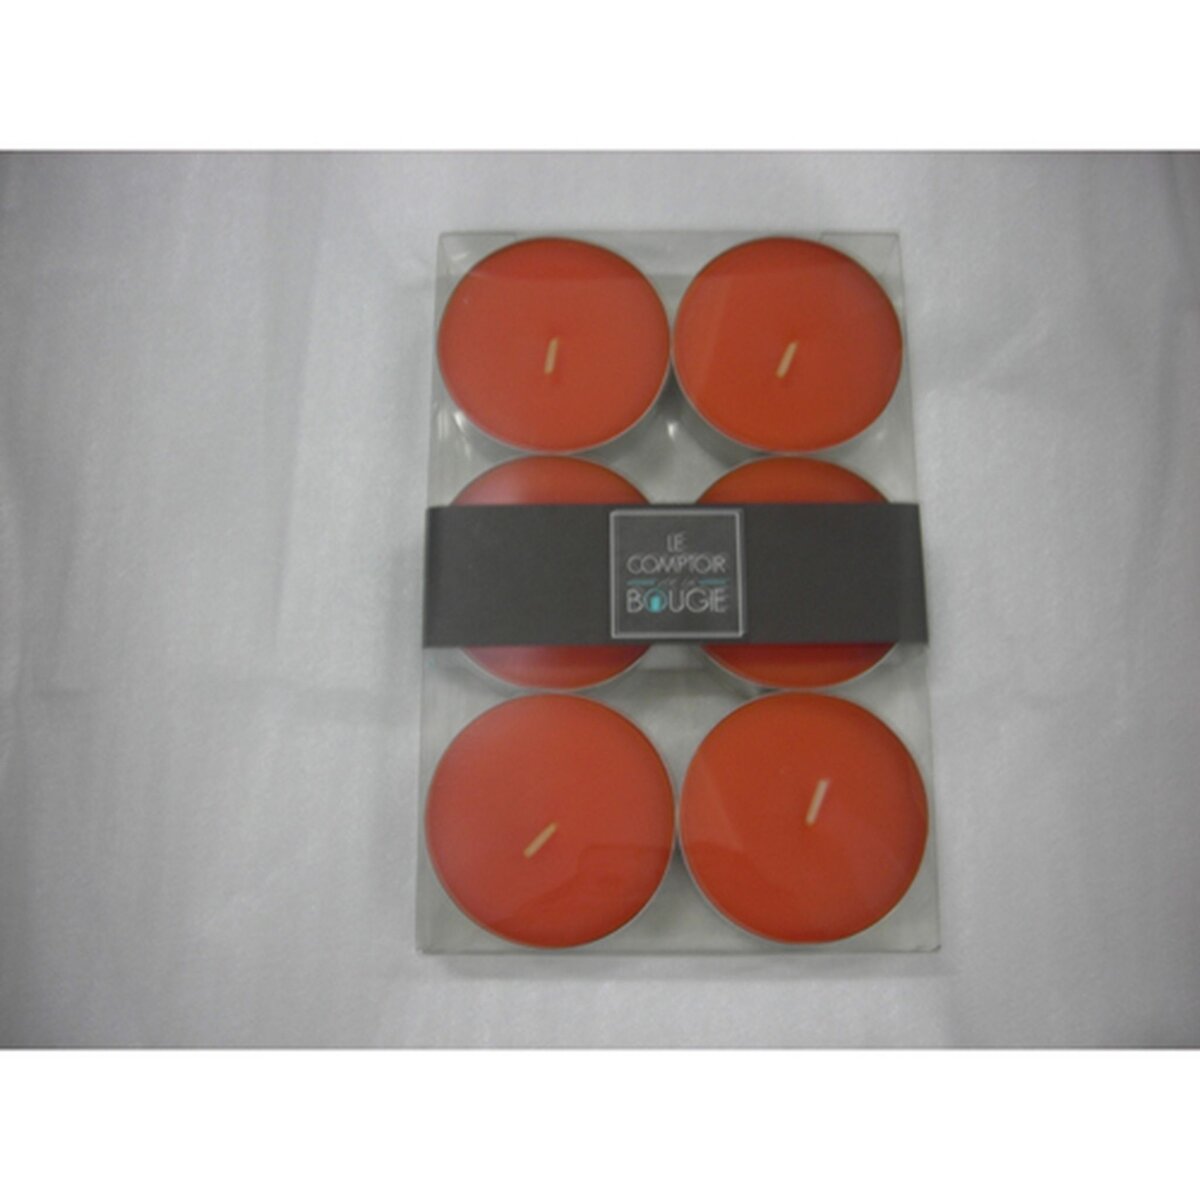 Comptoir des bougies Lot de 6 bougies colorées - Diam. 5,9 cm - Orange